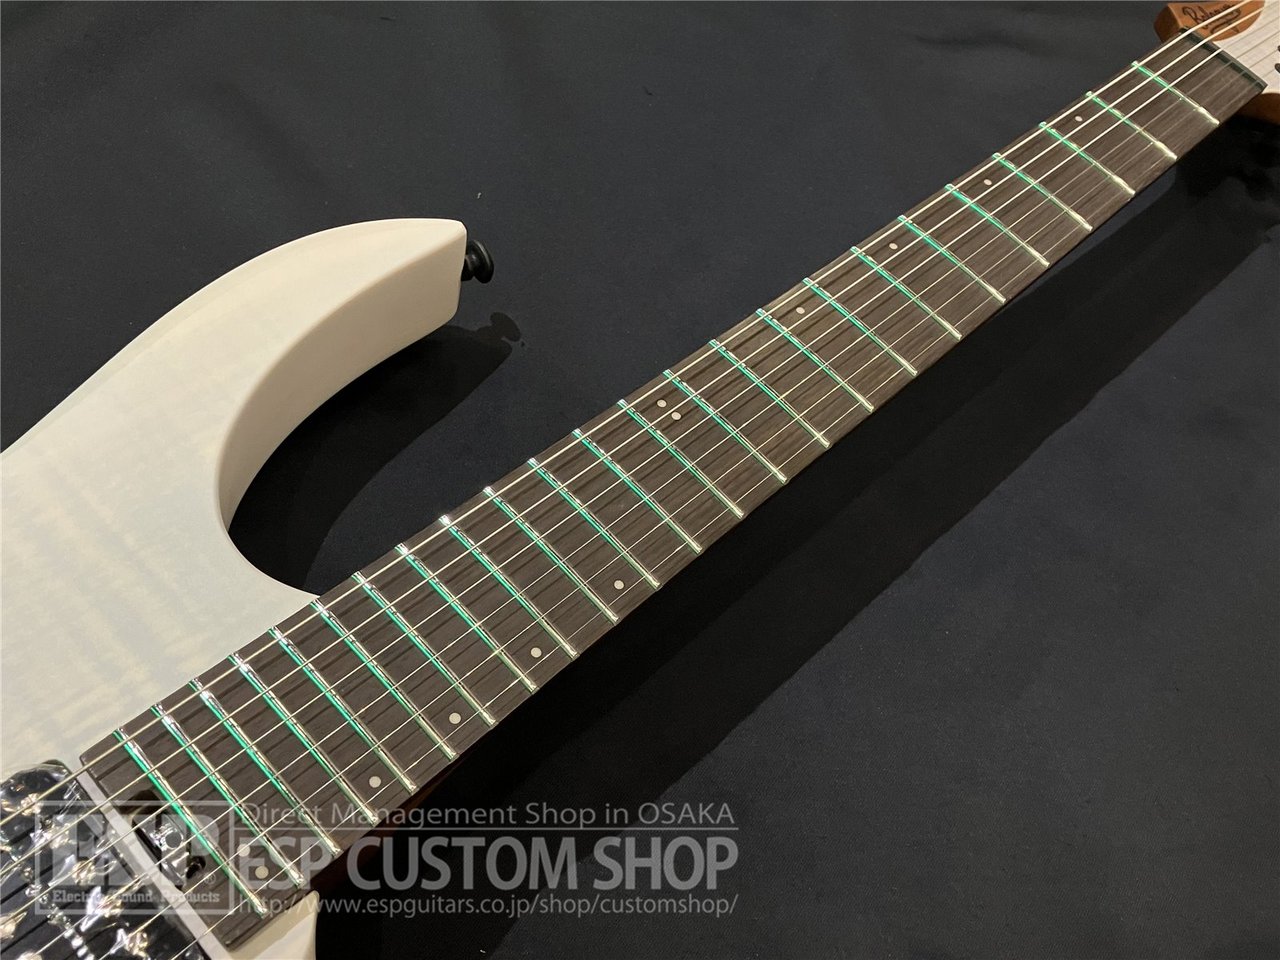 【即納可能】Balaguer Guitars(バラゲールギターズ)  Diablo Standard with Evertune Bridge / Satin Trans White　大阪店